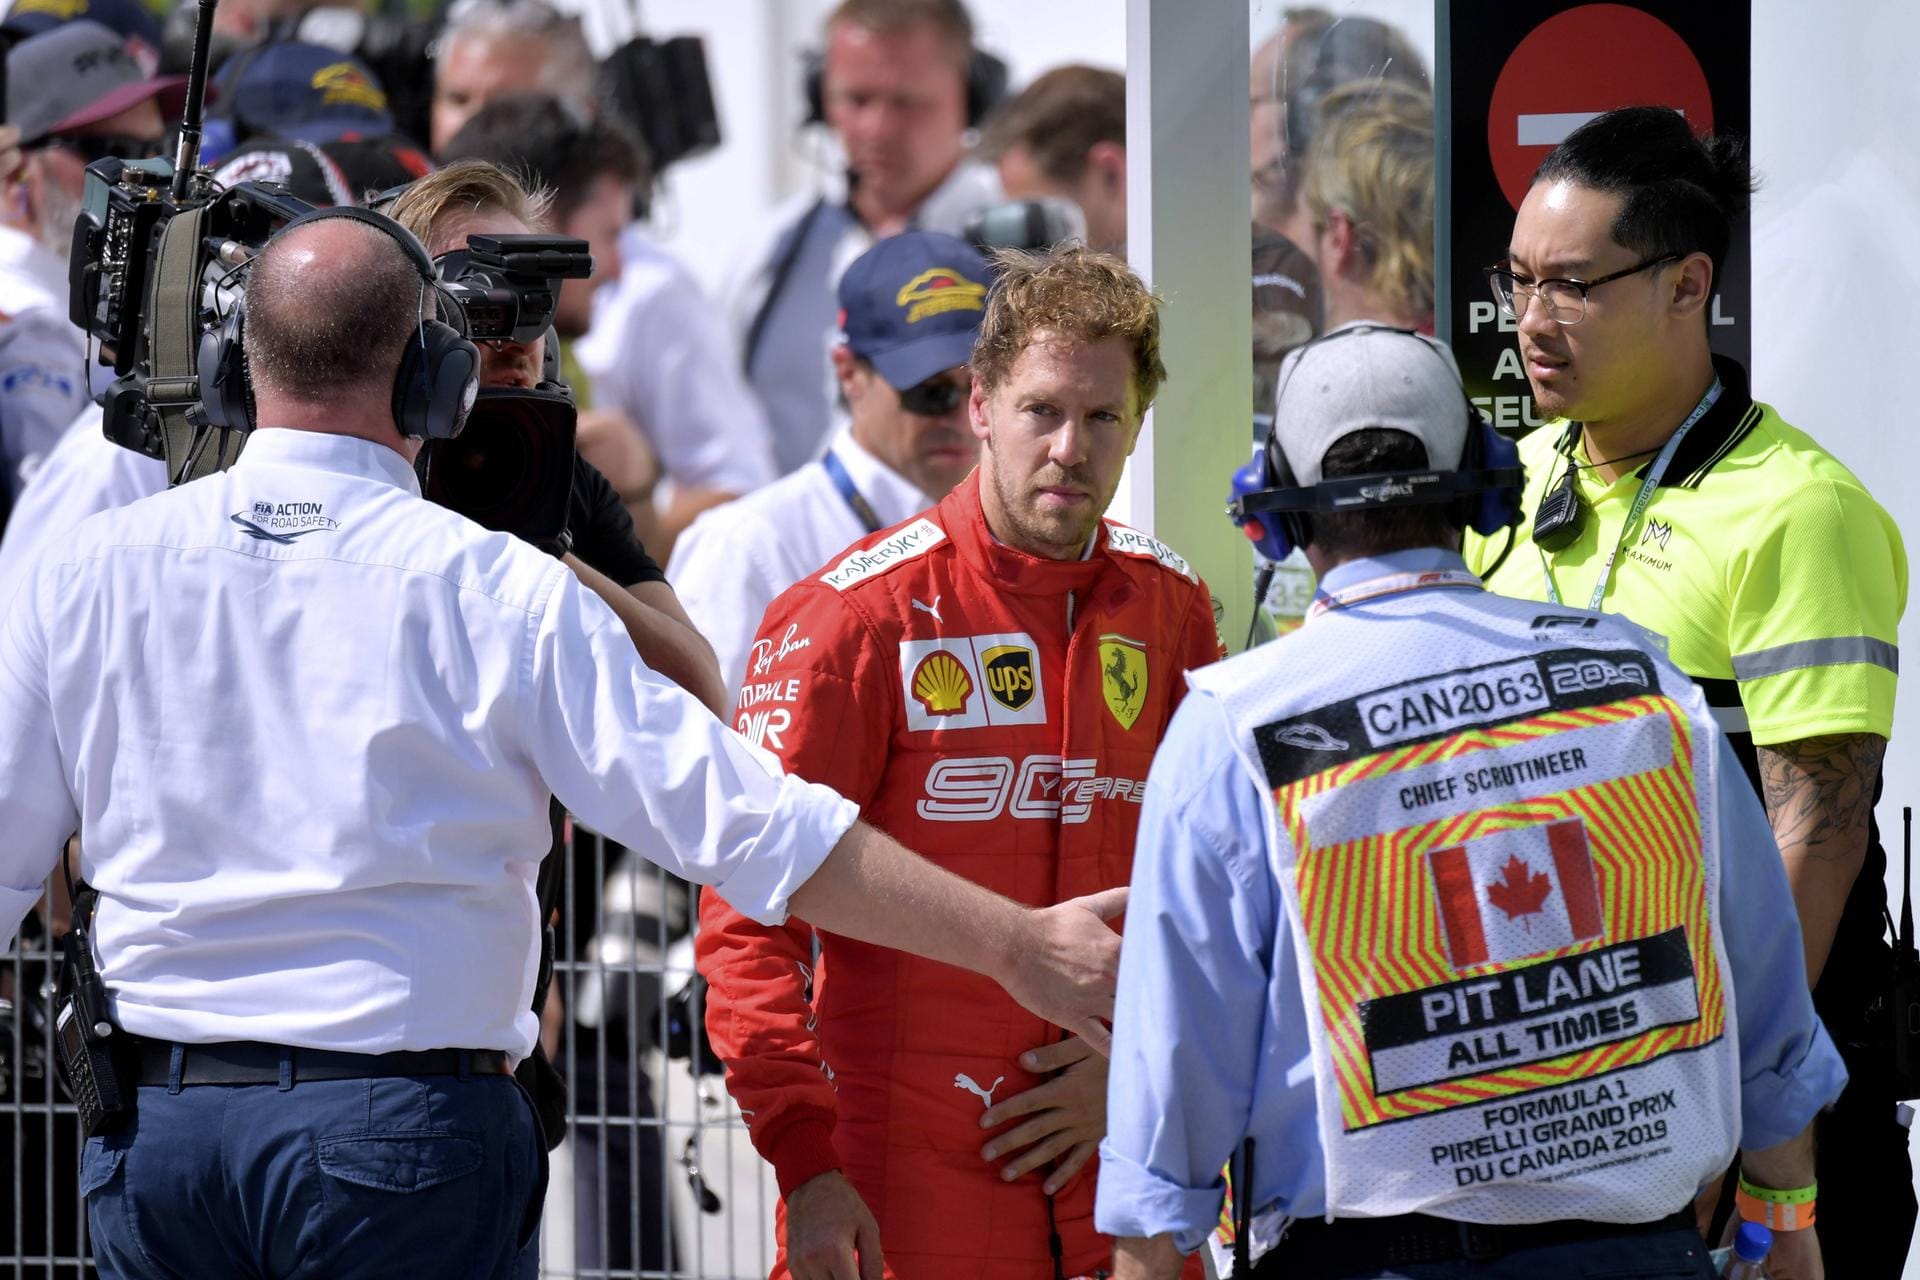 Marca: "Vettel verschenkt den Sieg. Er hatte das Rennen in der Tasche, er hatte Leclerc bereits zerstört und hielt Hamilton auf Abstand. Alles sah nach einem brillanten Sieg in einer perfekten Woche aus – doch dann kam der Fehler. Die fünf Sekunden Zeitstrafe wurden zum Scharfrichter für Vettel. Danach verliert er die Fassung, nicht gerade ein sportliches, eher ein kindisches Verhalten eines Profis mit einem Jahrzehnt Erfahrung."